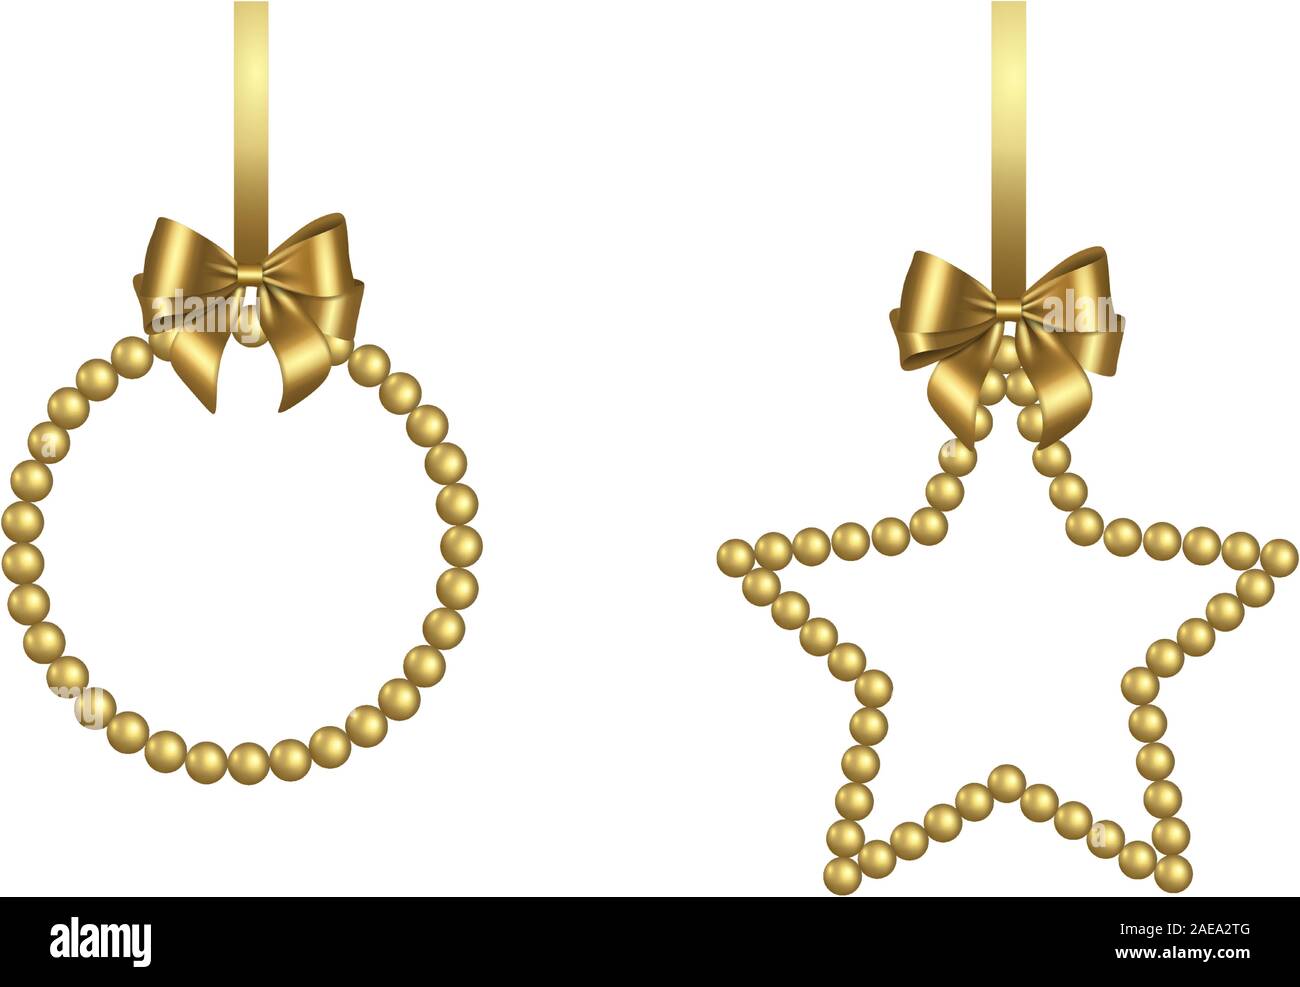 Weihnachten Rahmen mit Gold Perlen und Bogen Stock Vektor